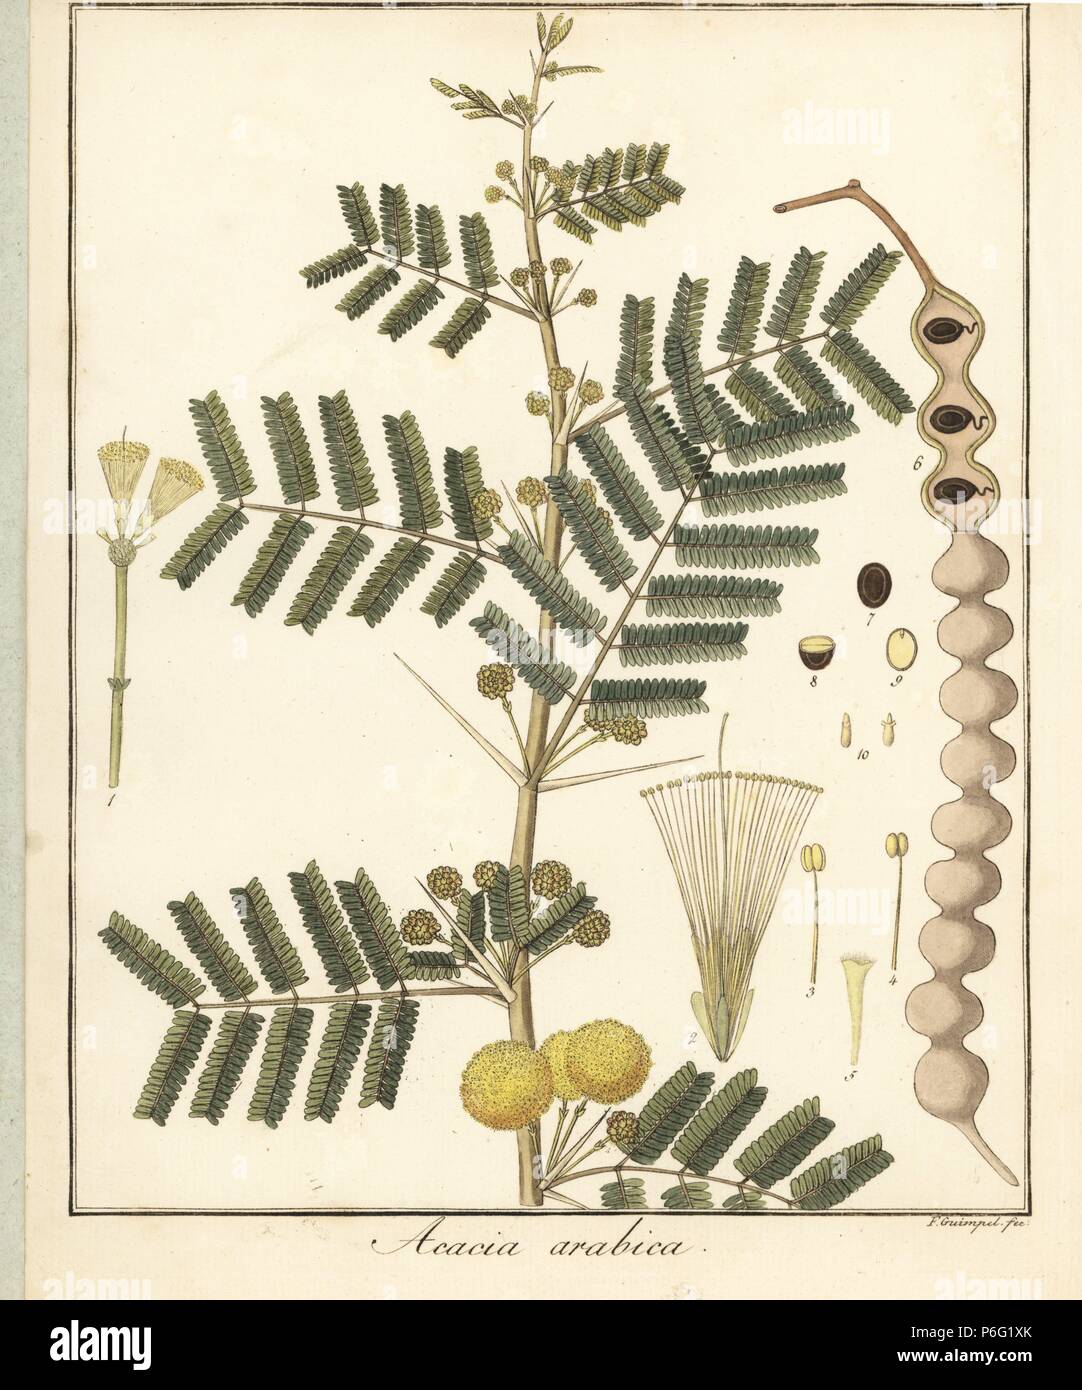 La gomme arabique ou thorn mimosa, Acacia nilotica. La gravure sur cuivre  coloriée par F. Guimpel de Dr. Friedrich Gottlob Hayne's Botanique  Médicale, Berlin, 1822. Hayne (1763-1832) était un botaniste allemand,  apothicaire